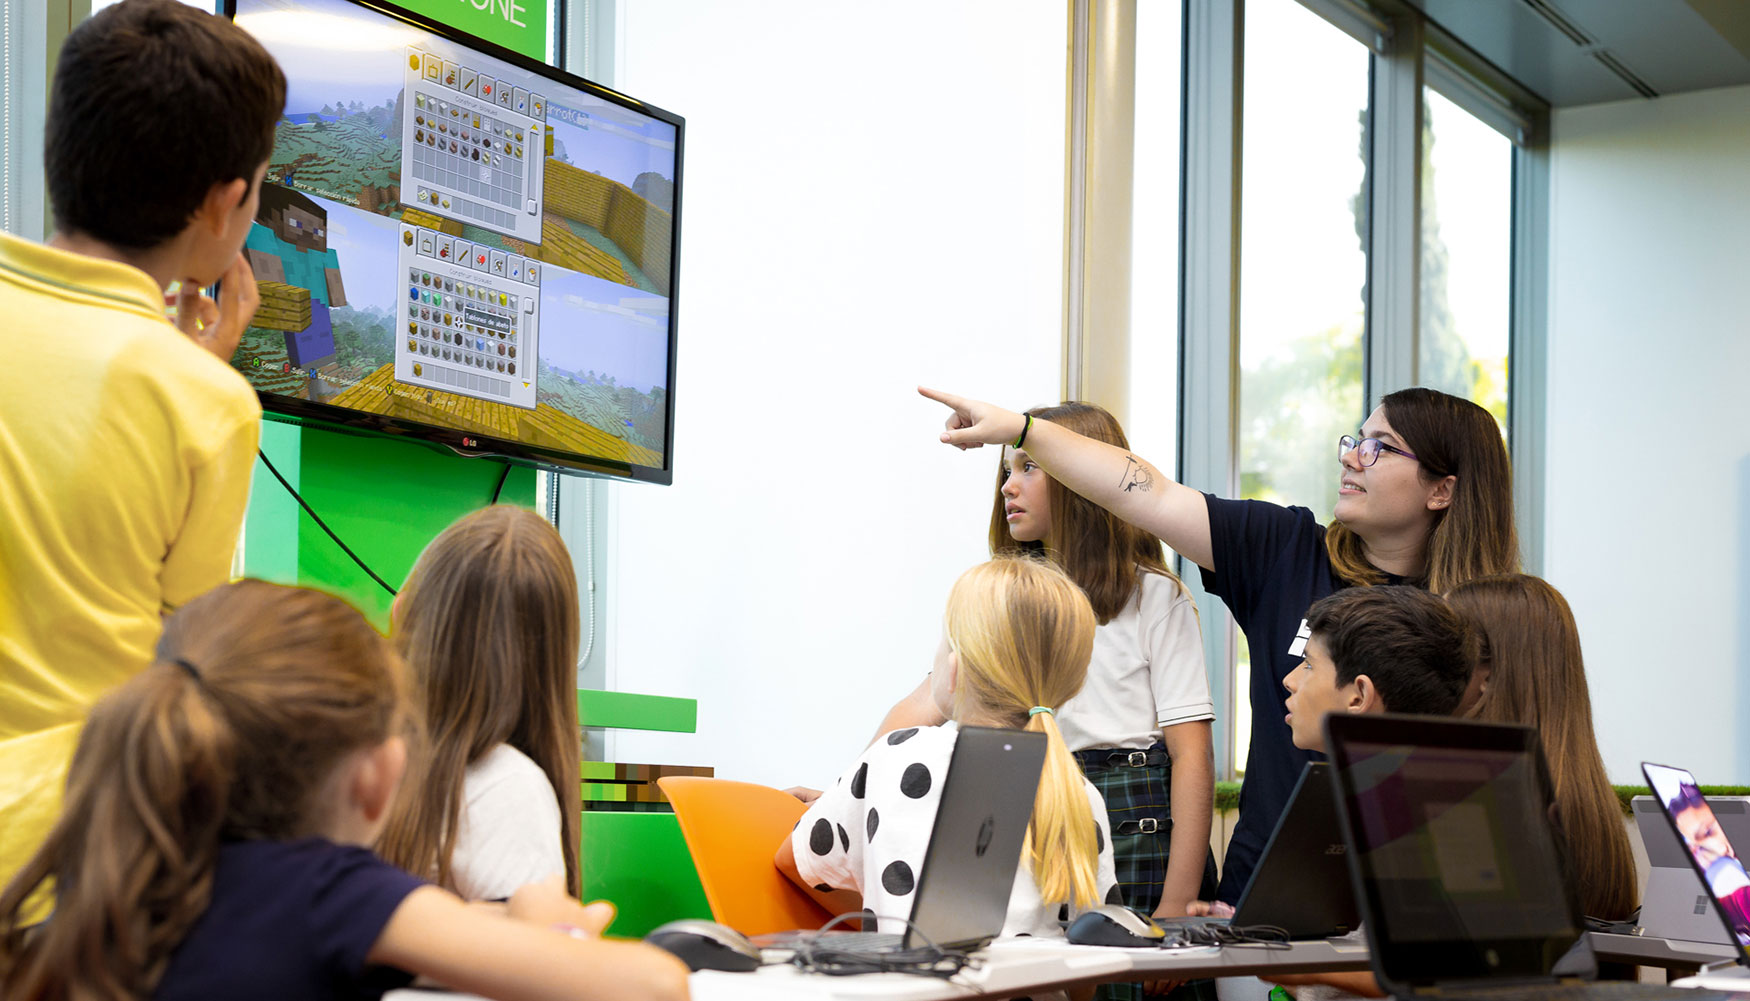 Utilizar un juego como Minecraft facilita a los profesores la labor de motivar a los estudiantes y engancharlos al proceso de aprendizaje...